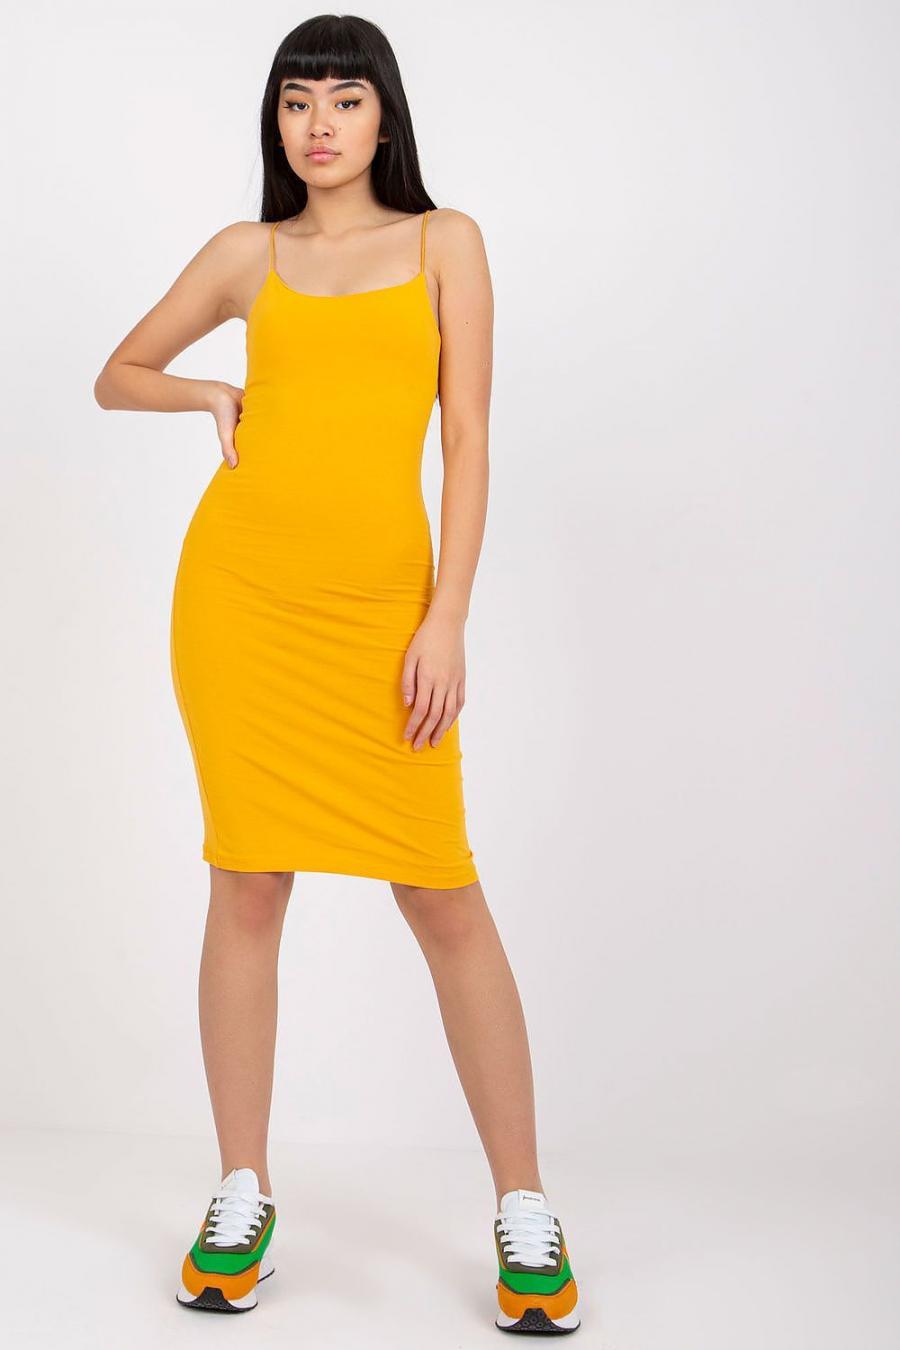 Ostatní značky šaty dámské 165153 - žlutá - velikost M